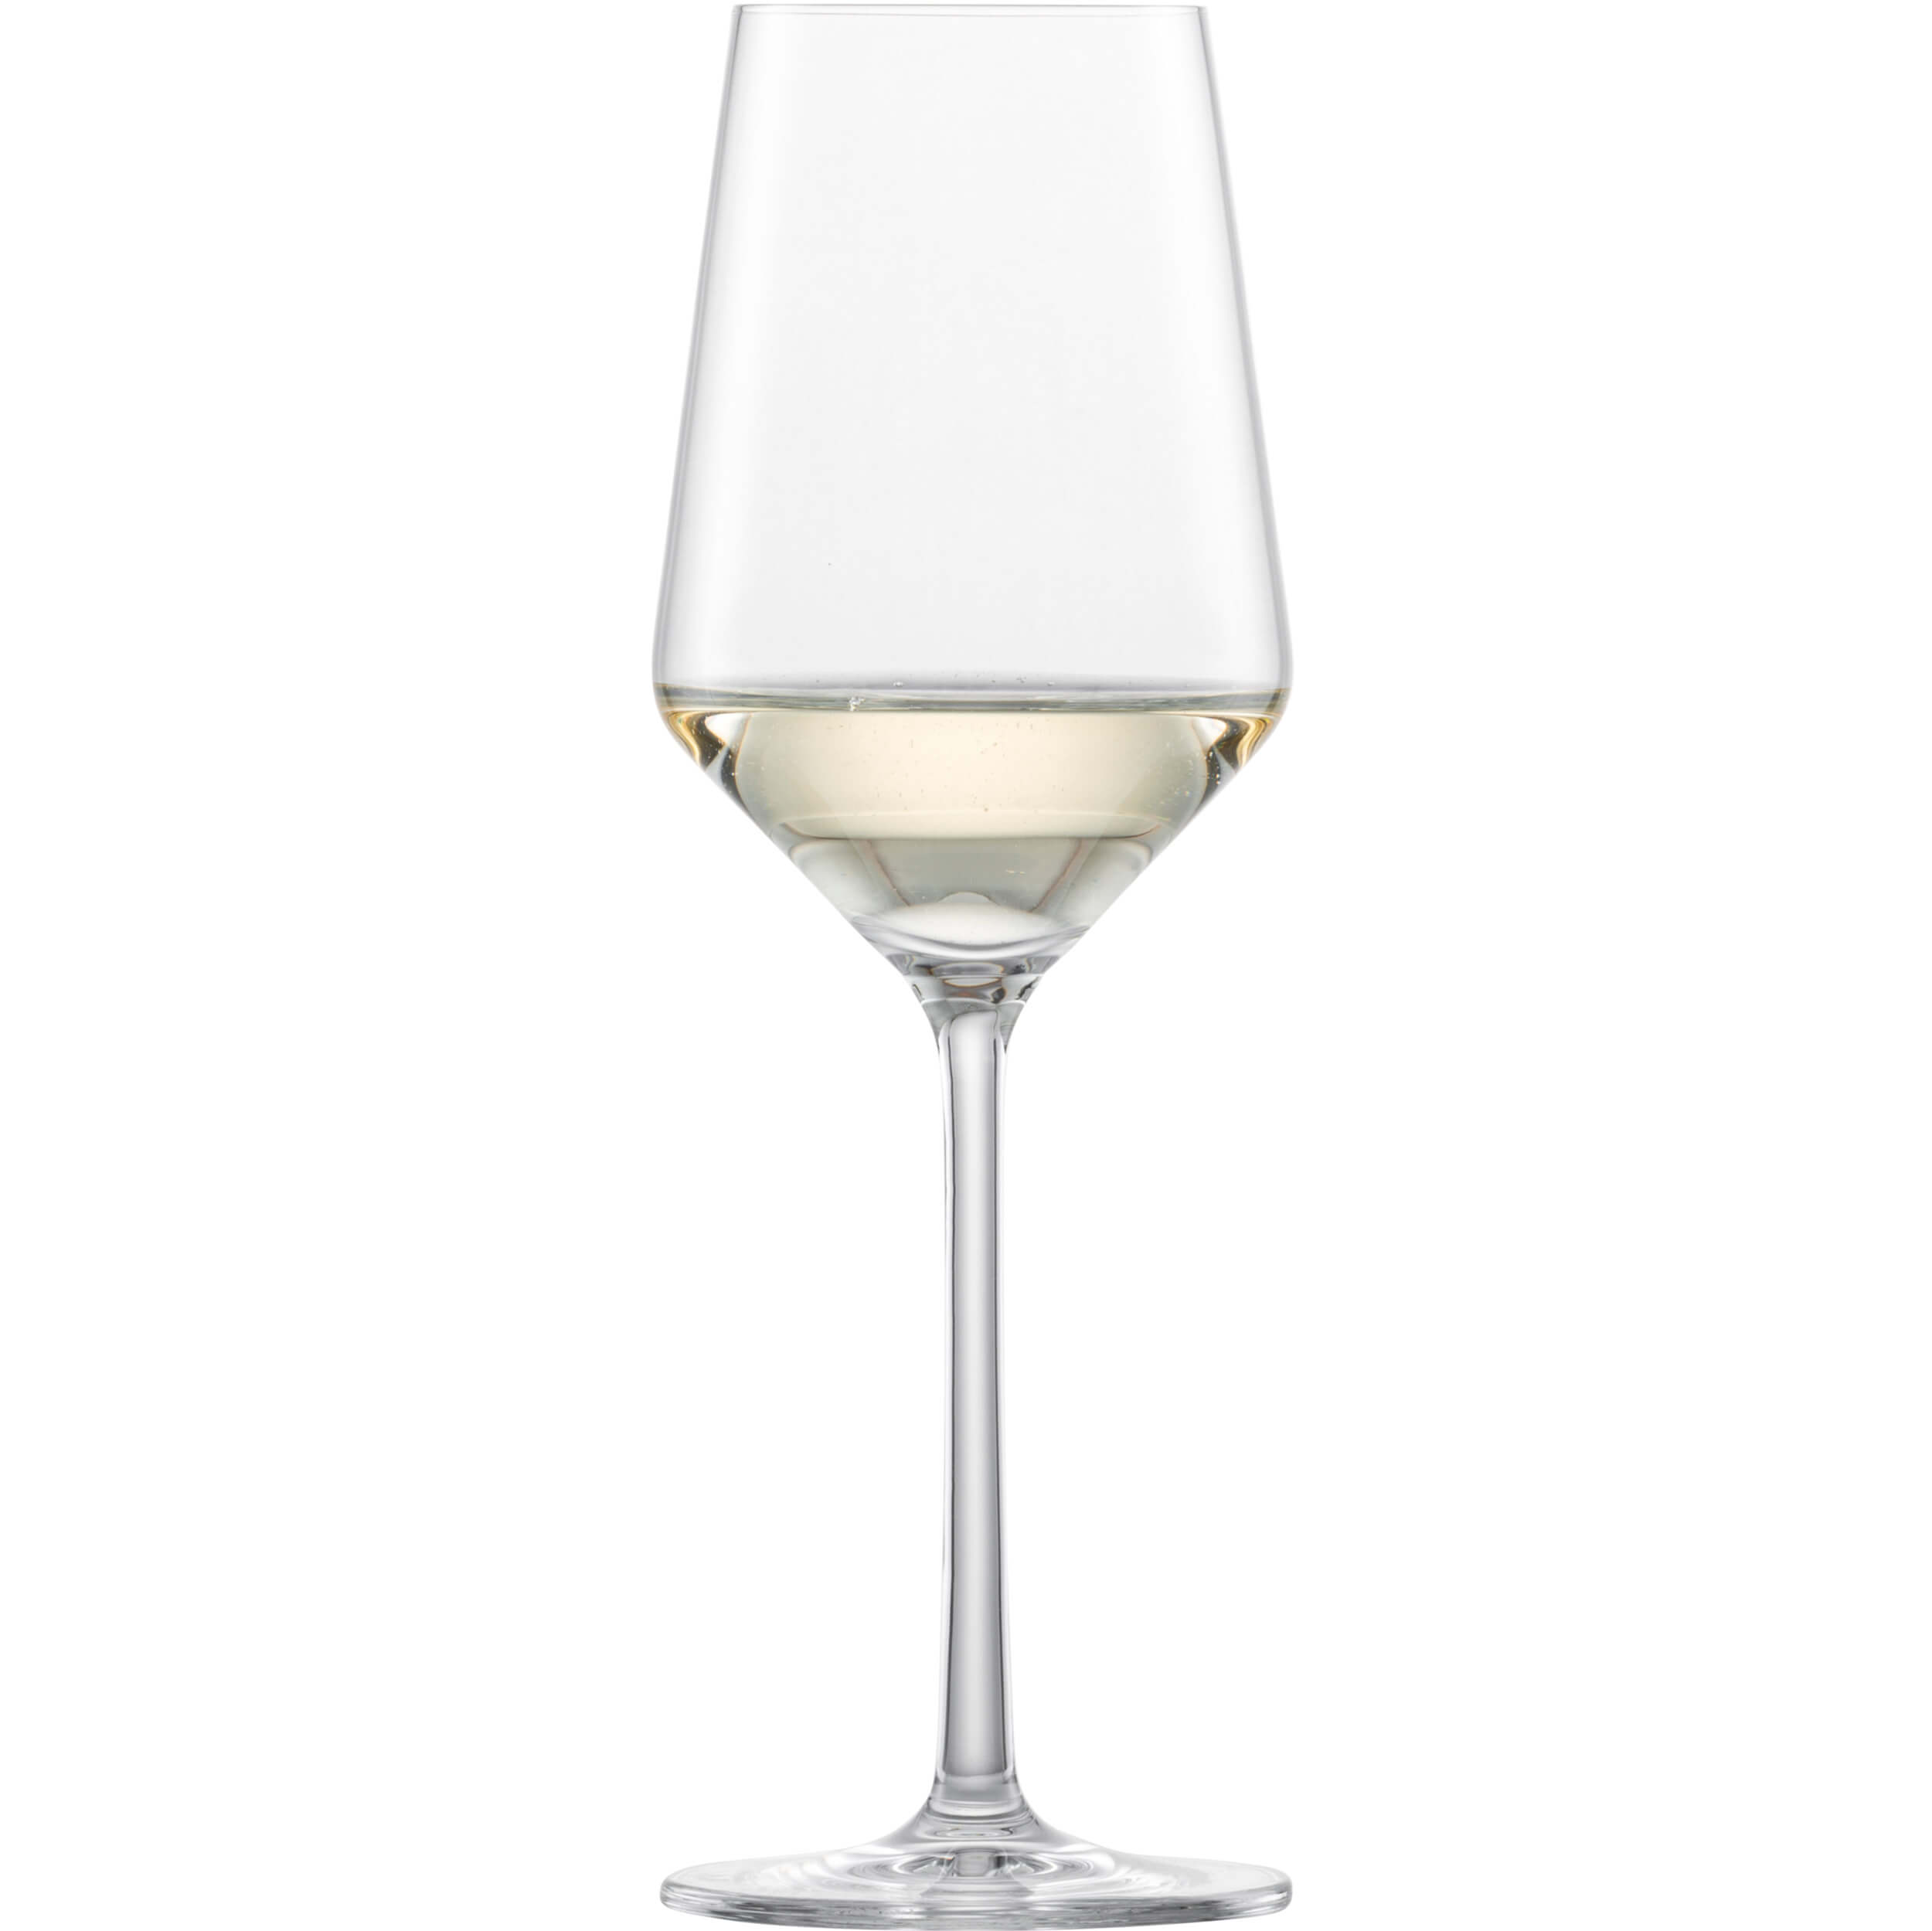 Weißweinglas Riesling, Belfesta Zwiesel Glas - 300ml, 0,15l Eiche (1 Stk.)